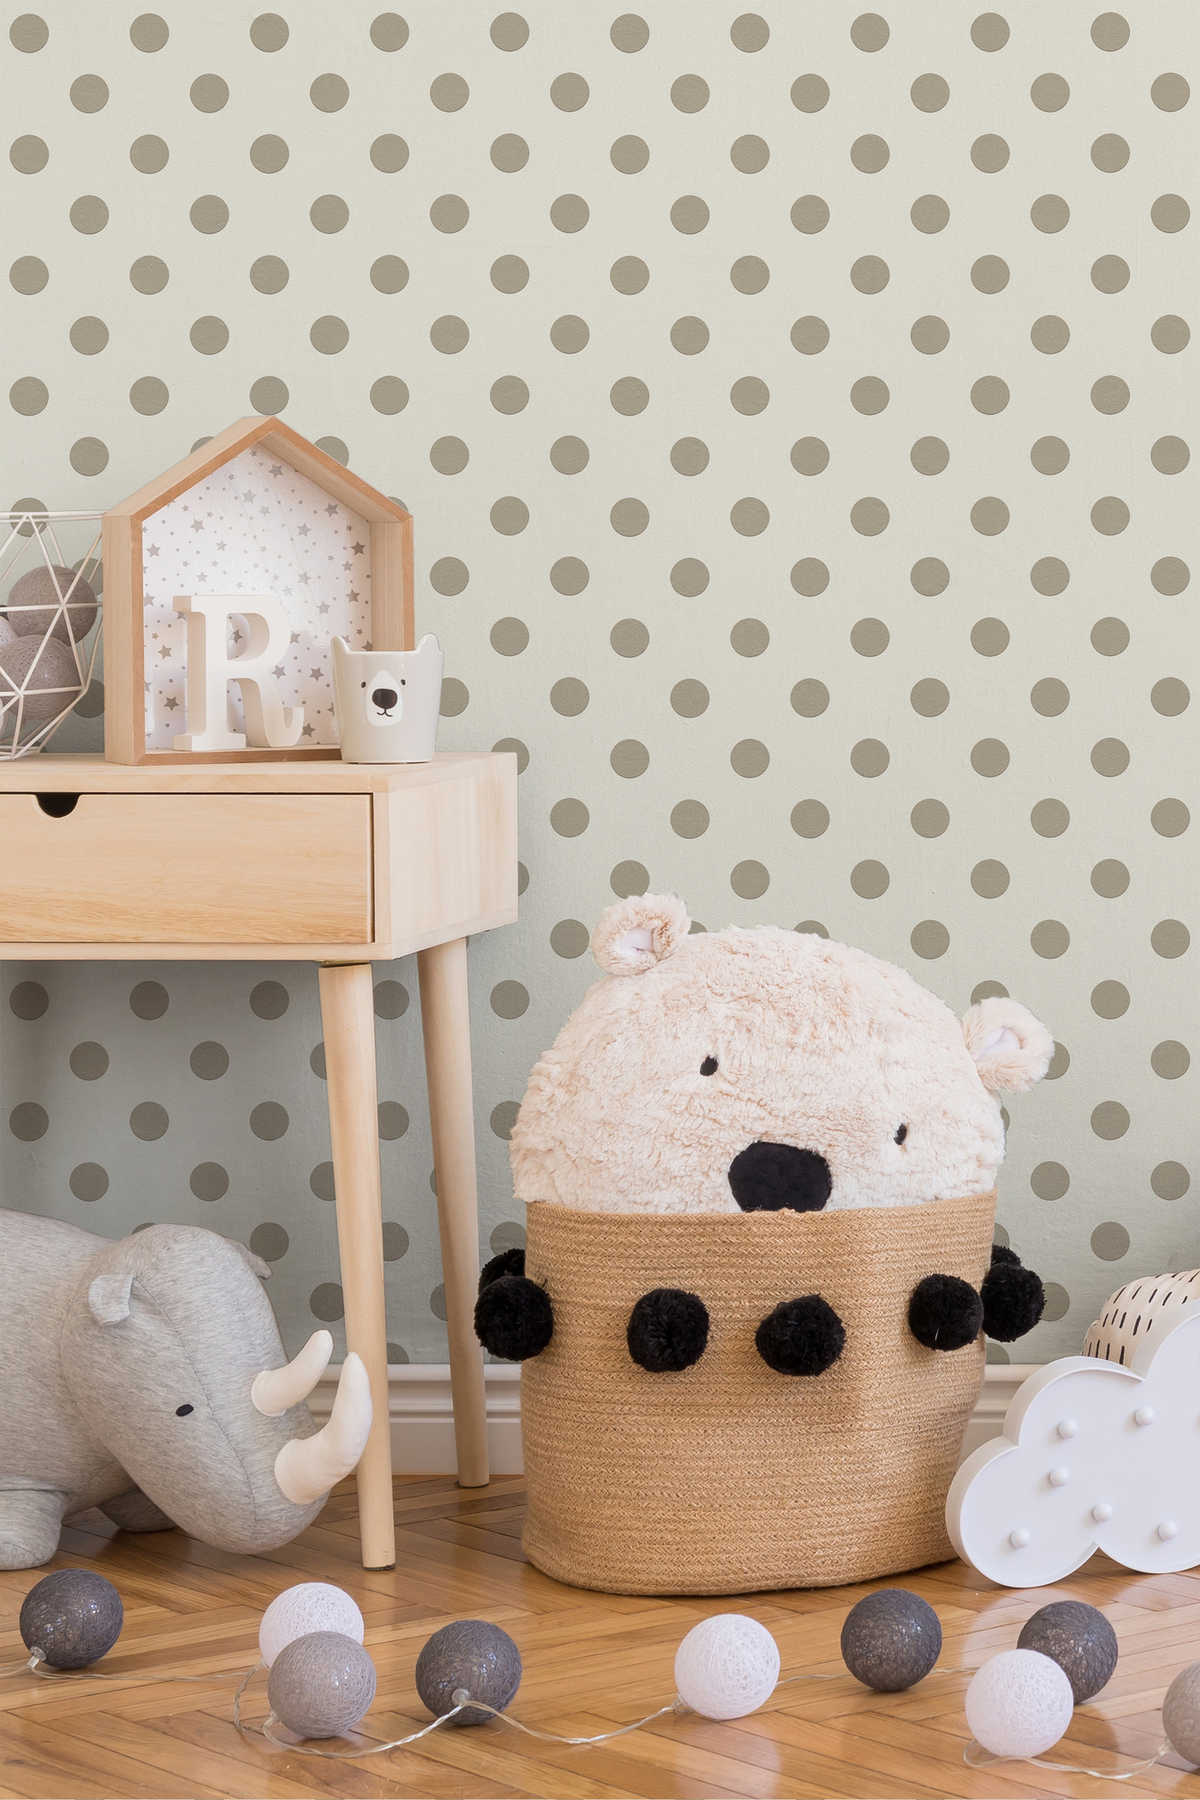             Papier peint intissé points, Polka Dots Design pour chambre d'enfant - beige, rose
        